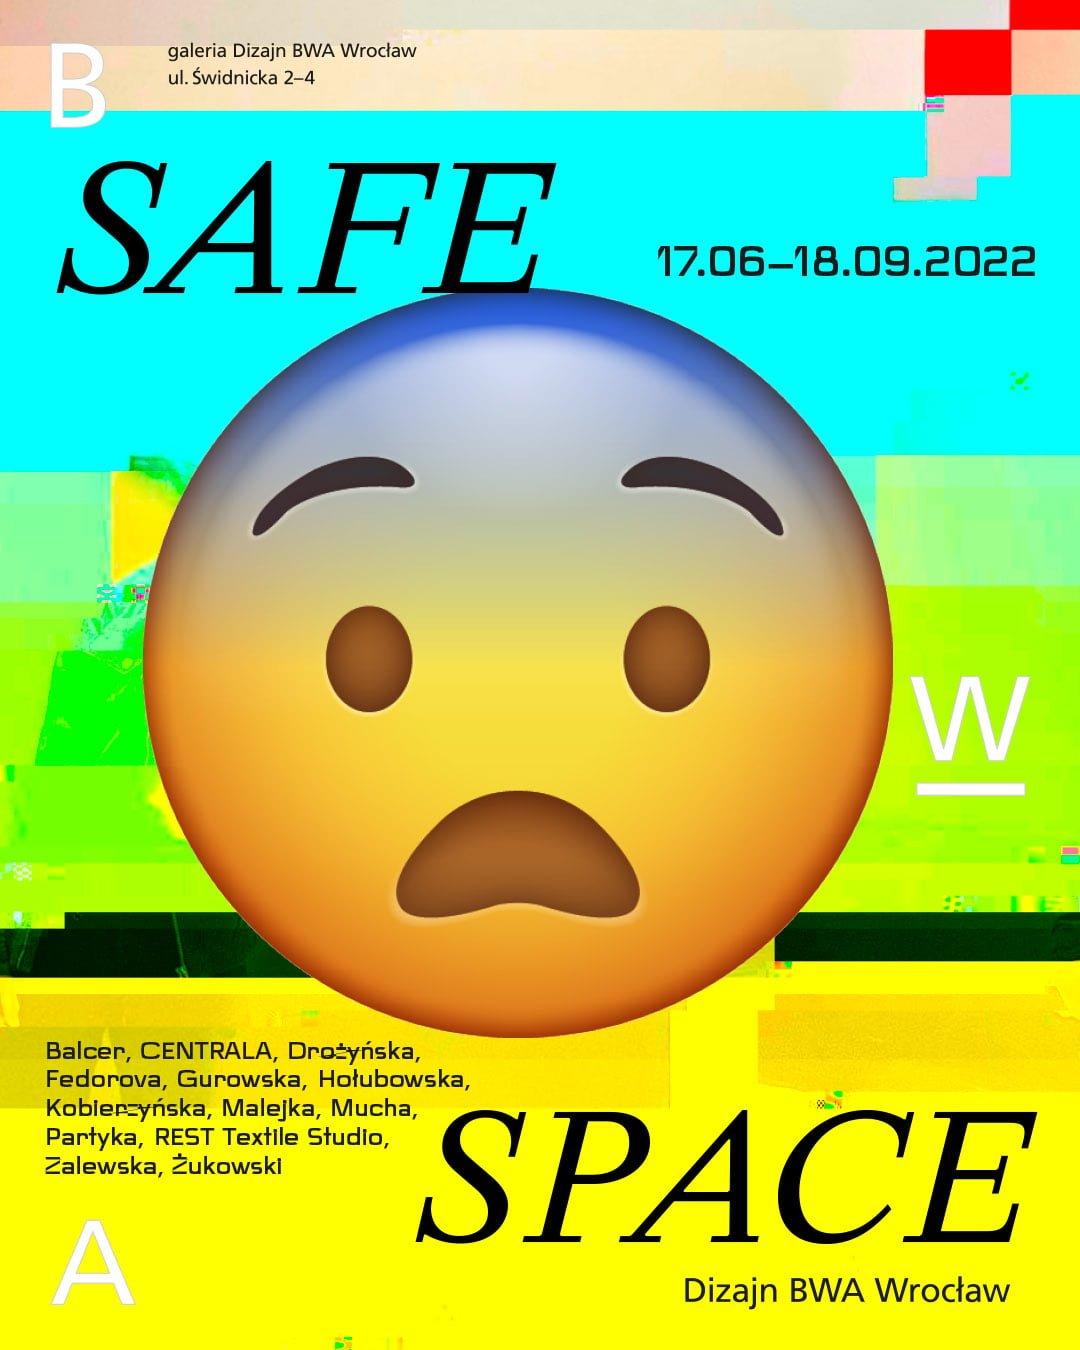 Plakat promujący wystawę SAFE SPACE w galerii Dizajn BWA Wrocław